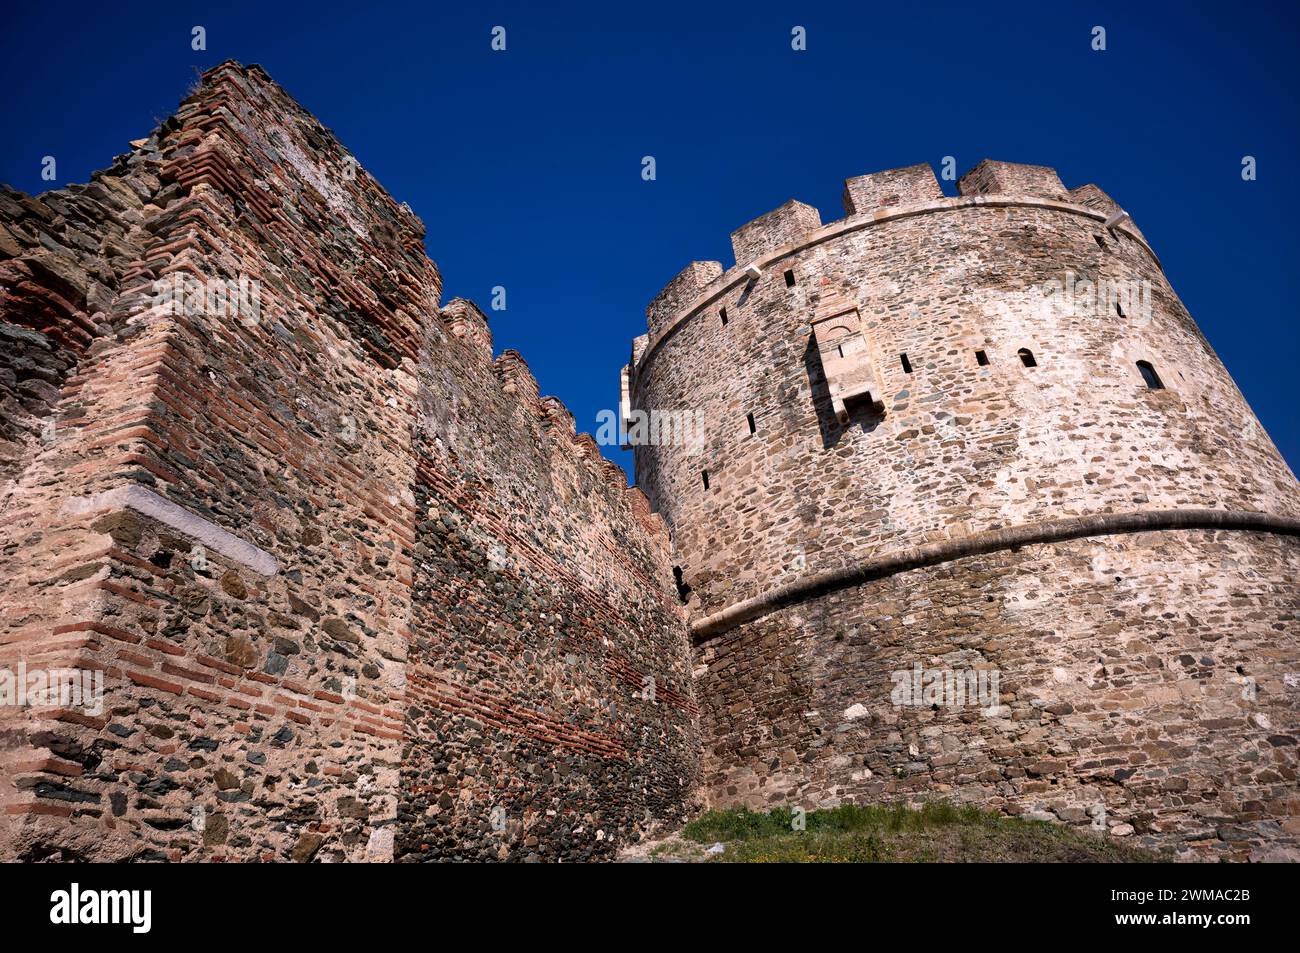 La Tour d'Alyssa, également connue sous le nom de Tour trigone, mur de la ville byzantine orientale, Acropole, vieille ville, ville haute, Thessalonique, Macédoine, Grèce Banque D'Images